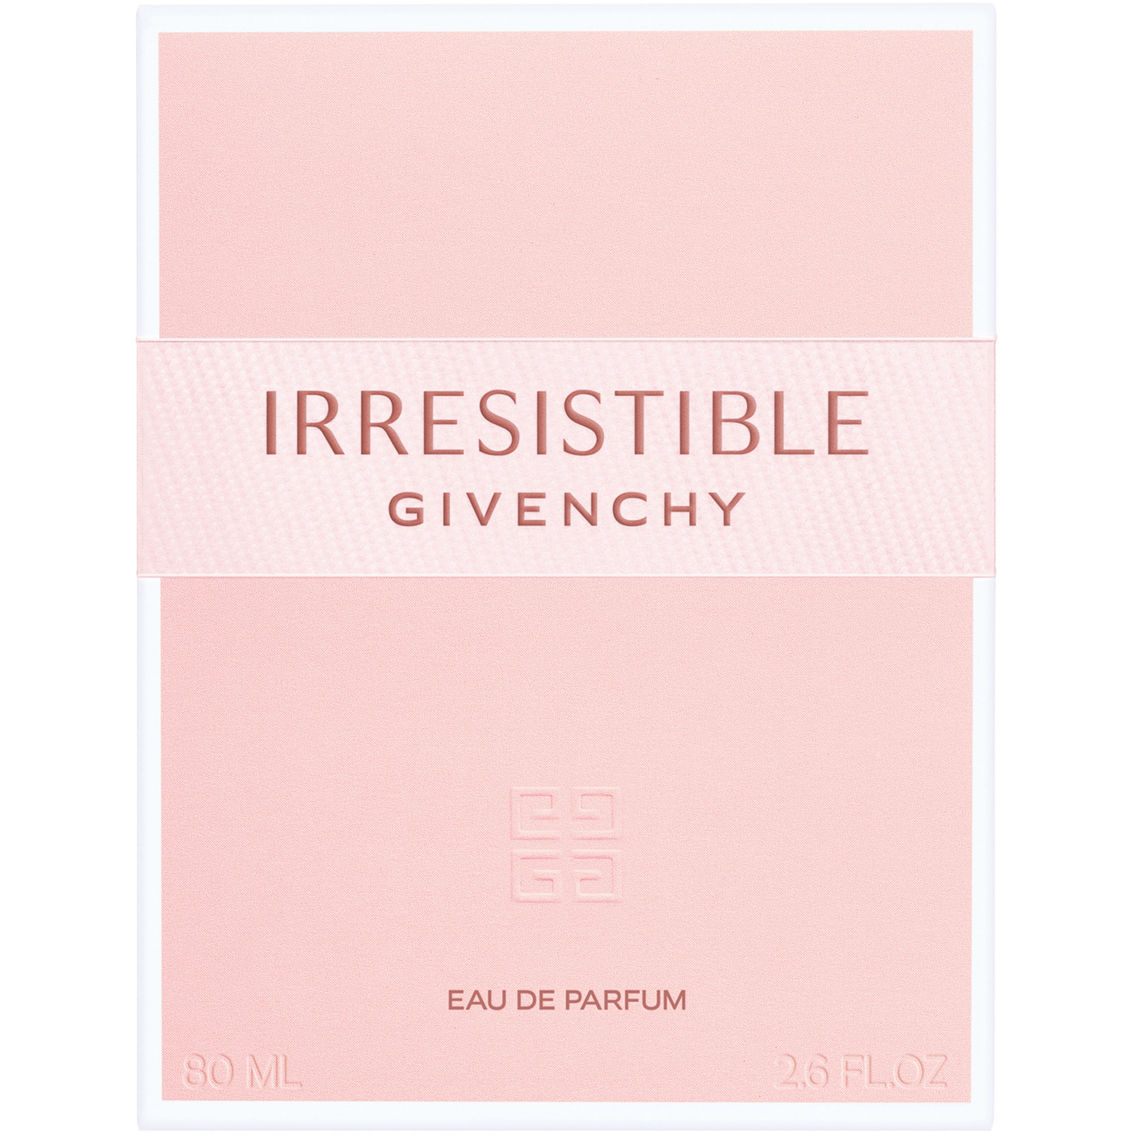 Givenchy Irresistible Eau de Parfum - Image 3 of 3